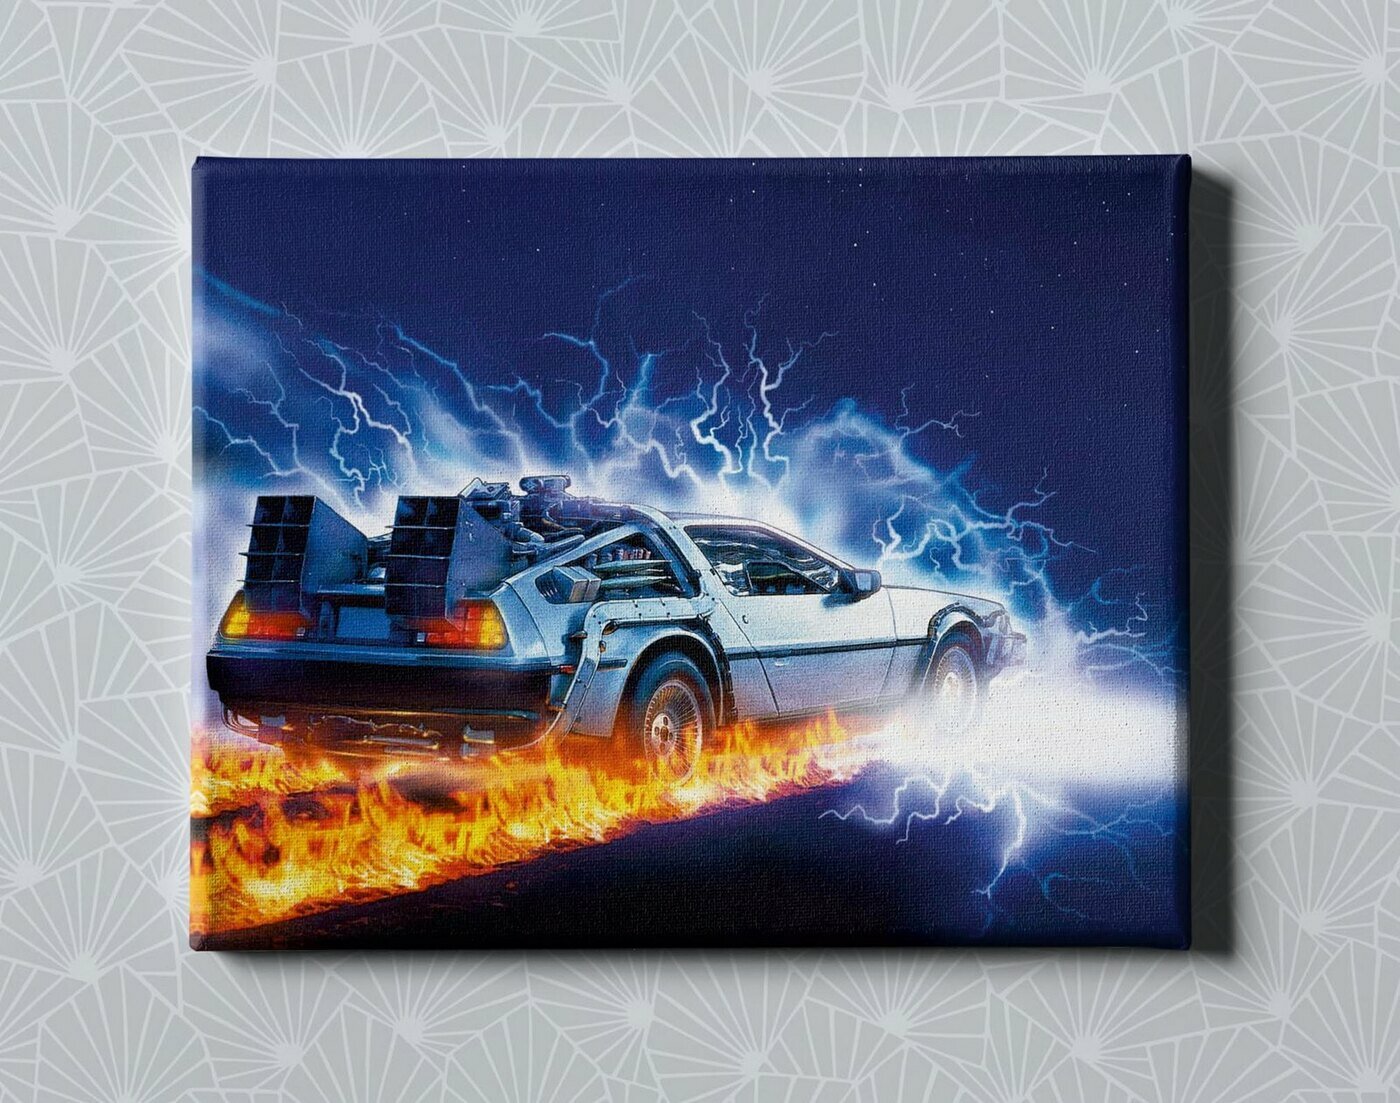 Интерьерный постер / Картина на стену / Картина в подарок для дома / Картина на холсте для интерьера - Фильм Назад в будщее DeLorean, размер 30х40см